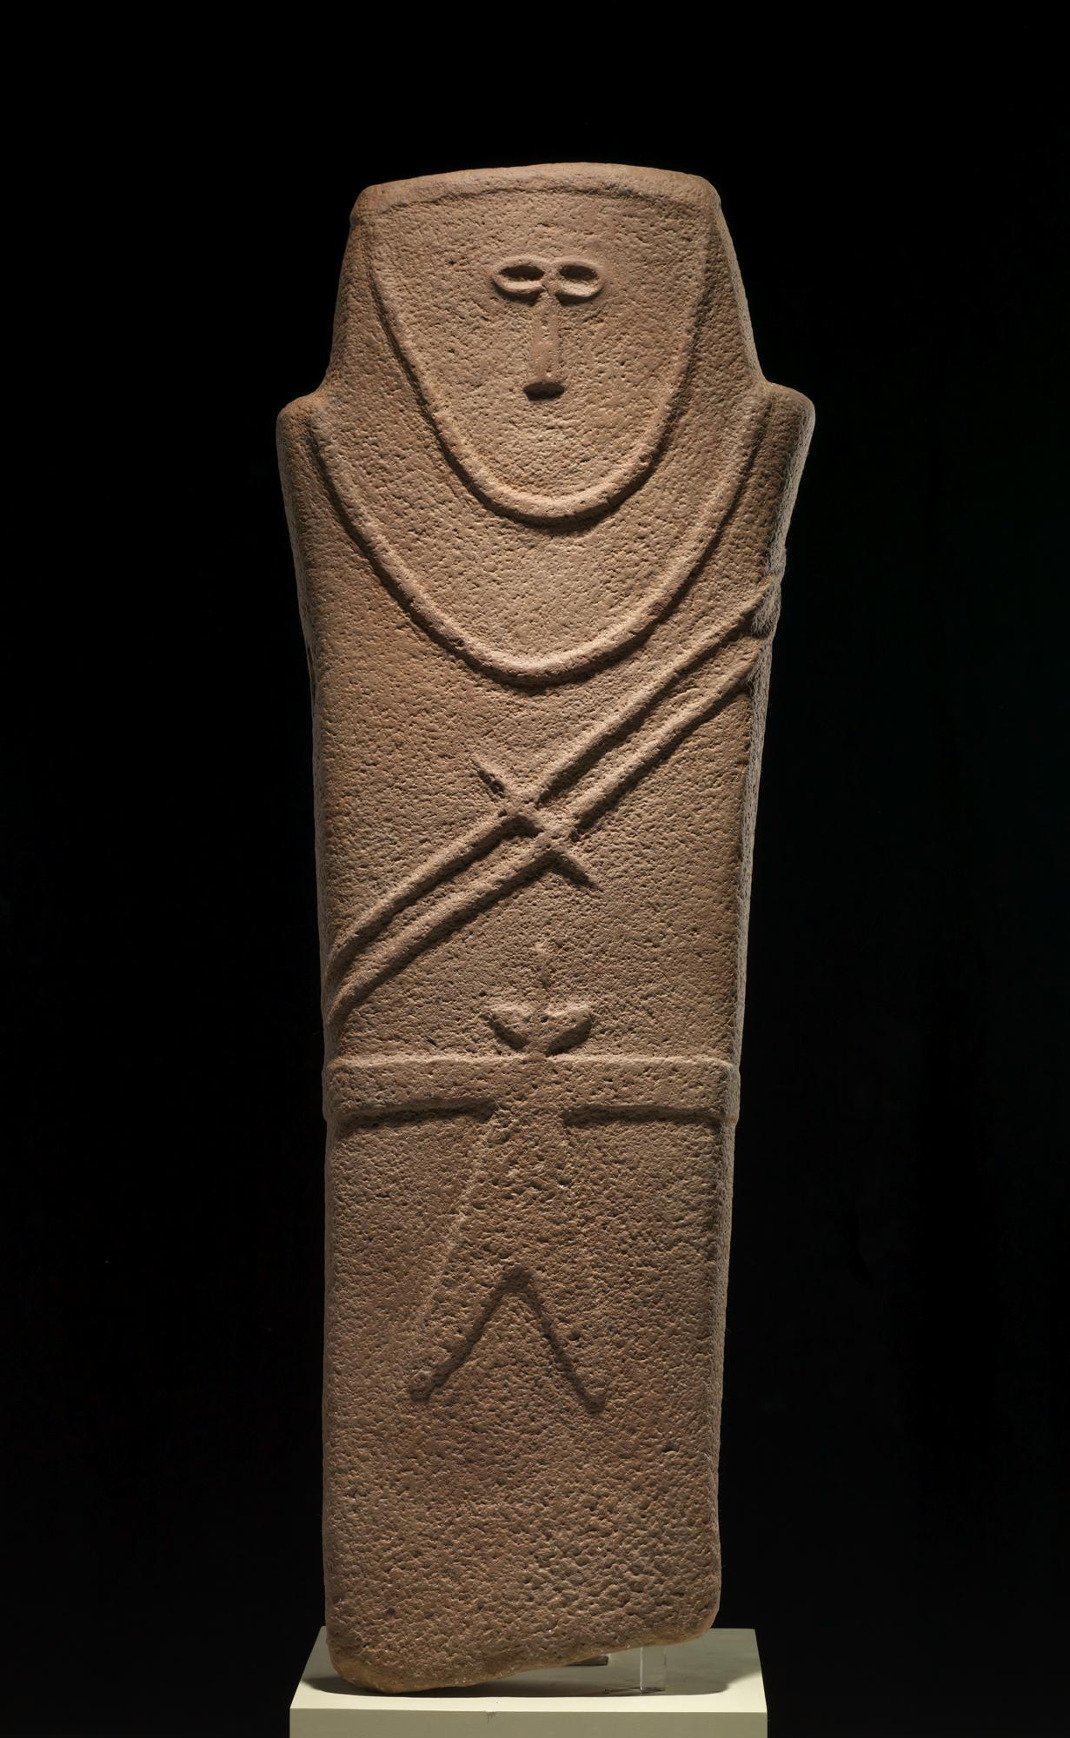 Ανθρωπόμορφη στήλη. Από την Καριάτ αλ-Κάαφα, κοντά στην πόλη Χάιλ 4η χιλιετία π.Χ. Ψαμμίτης Εθνικό Μουσείο, Ριάντ.